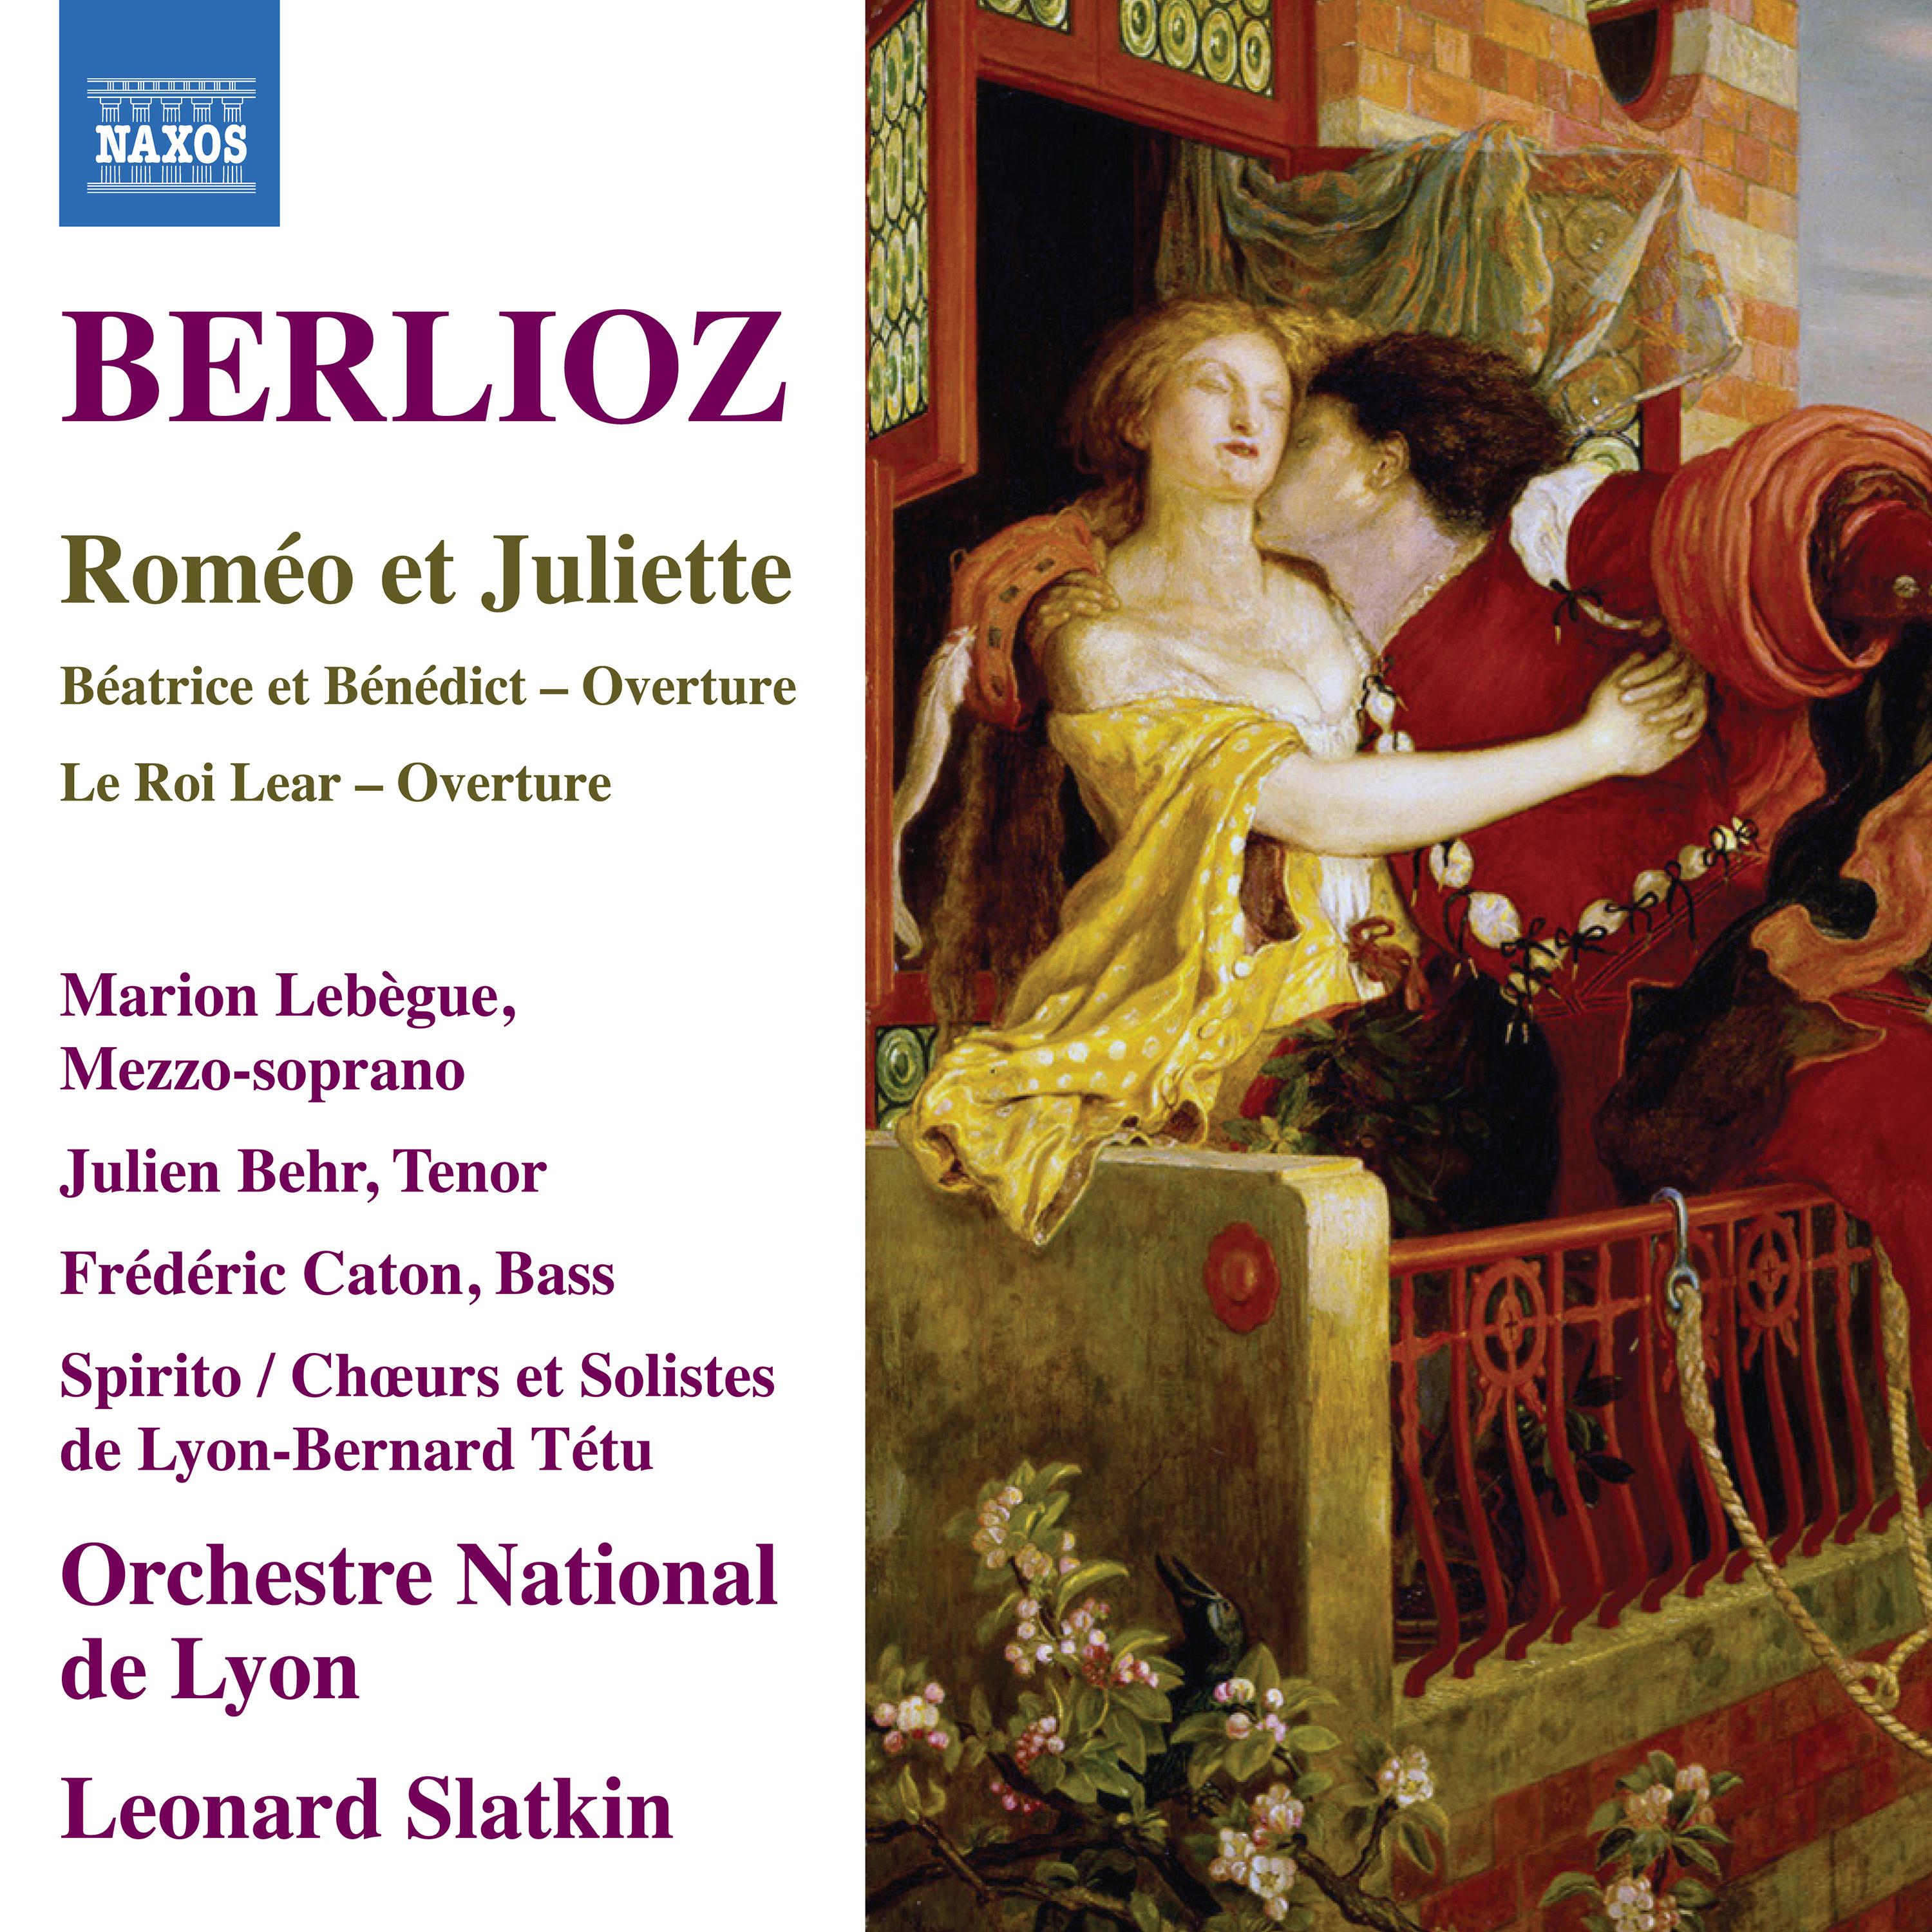 Rome o et Juliette, Op. 17: Part II: La Reine Mab, ou la Fe e des Songes: Scherzo